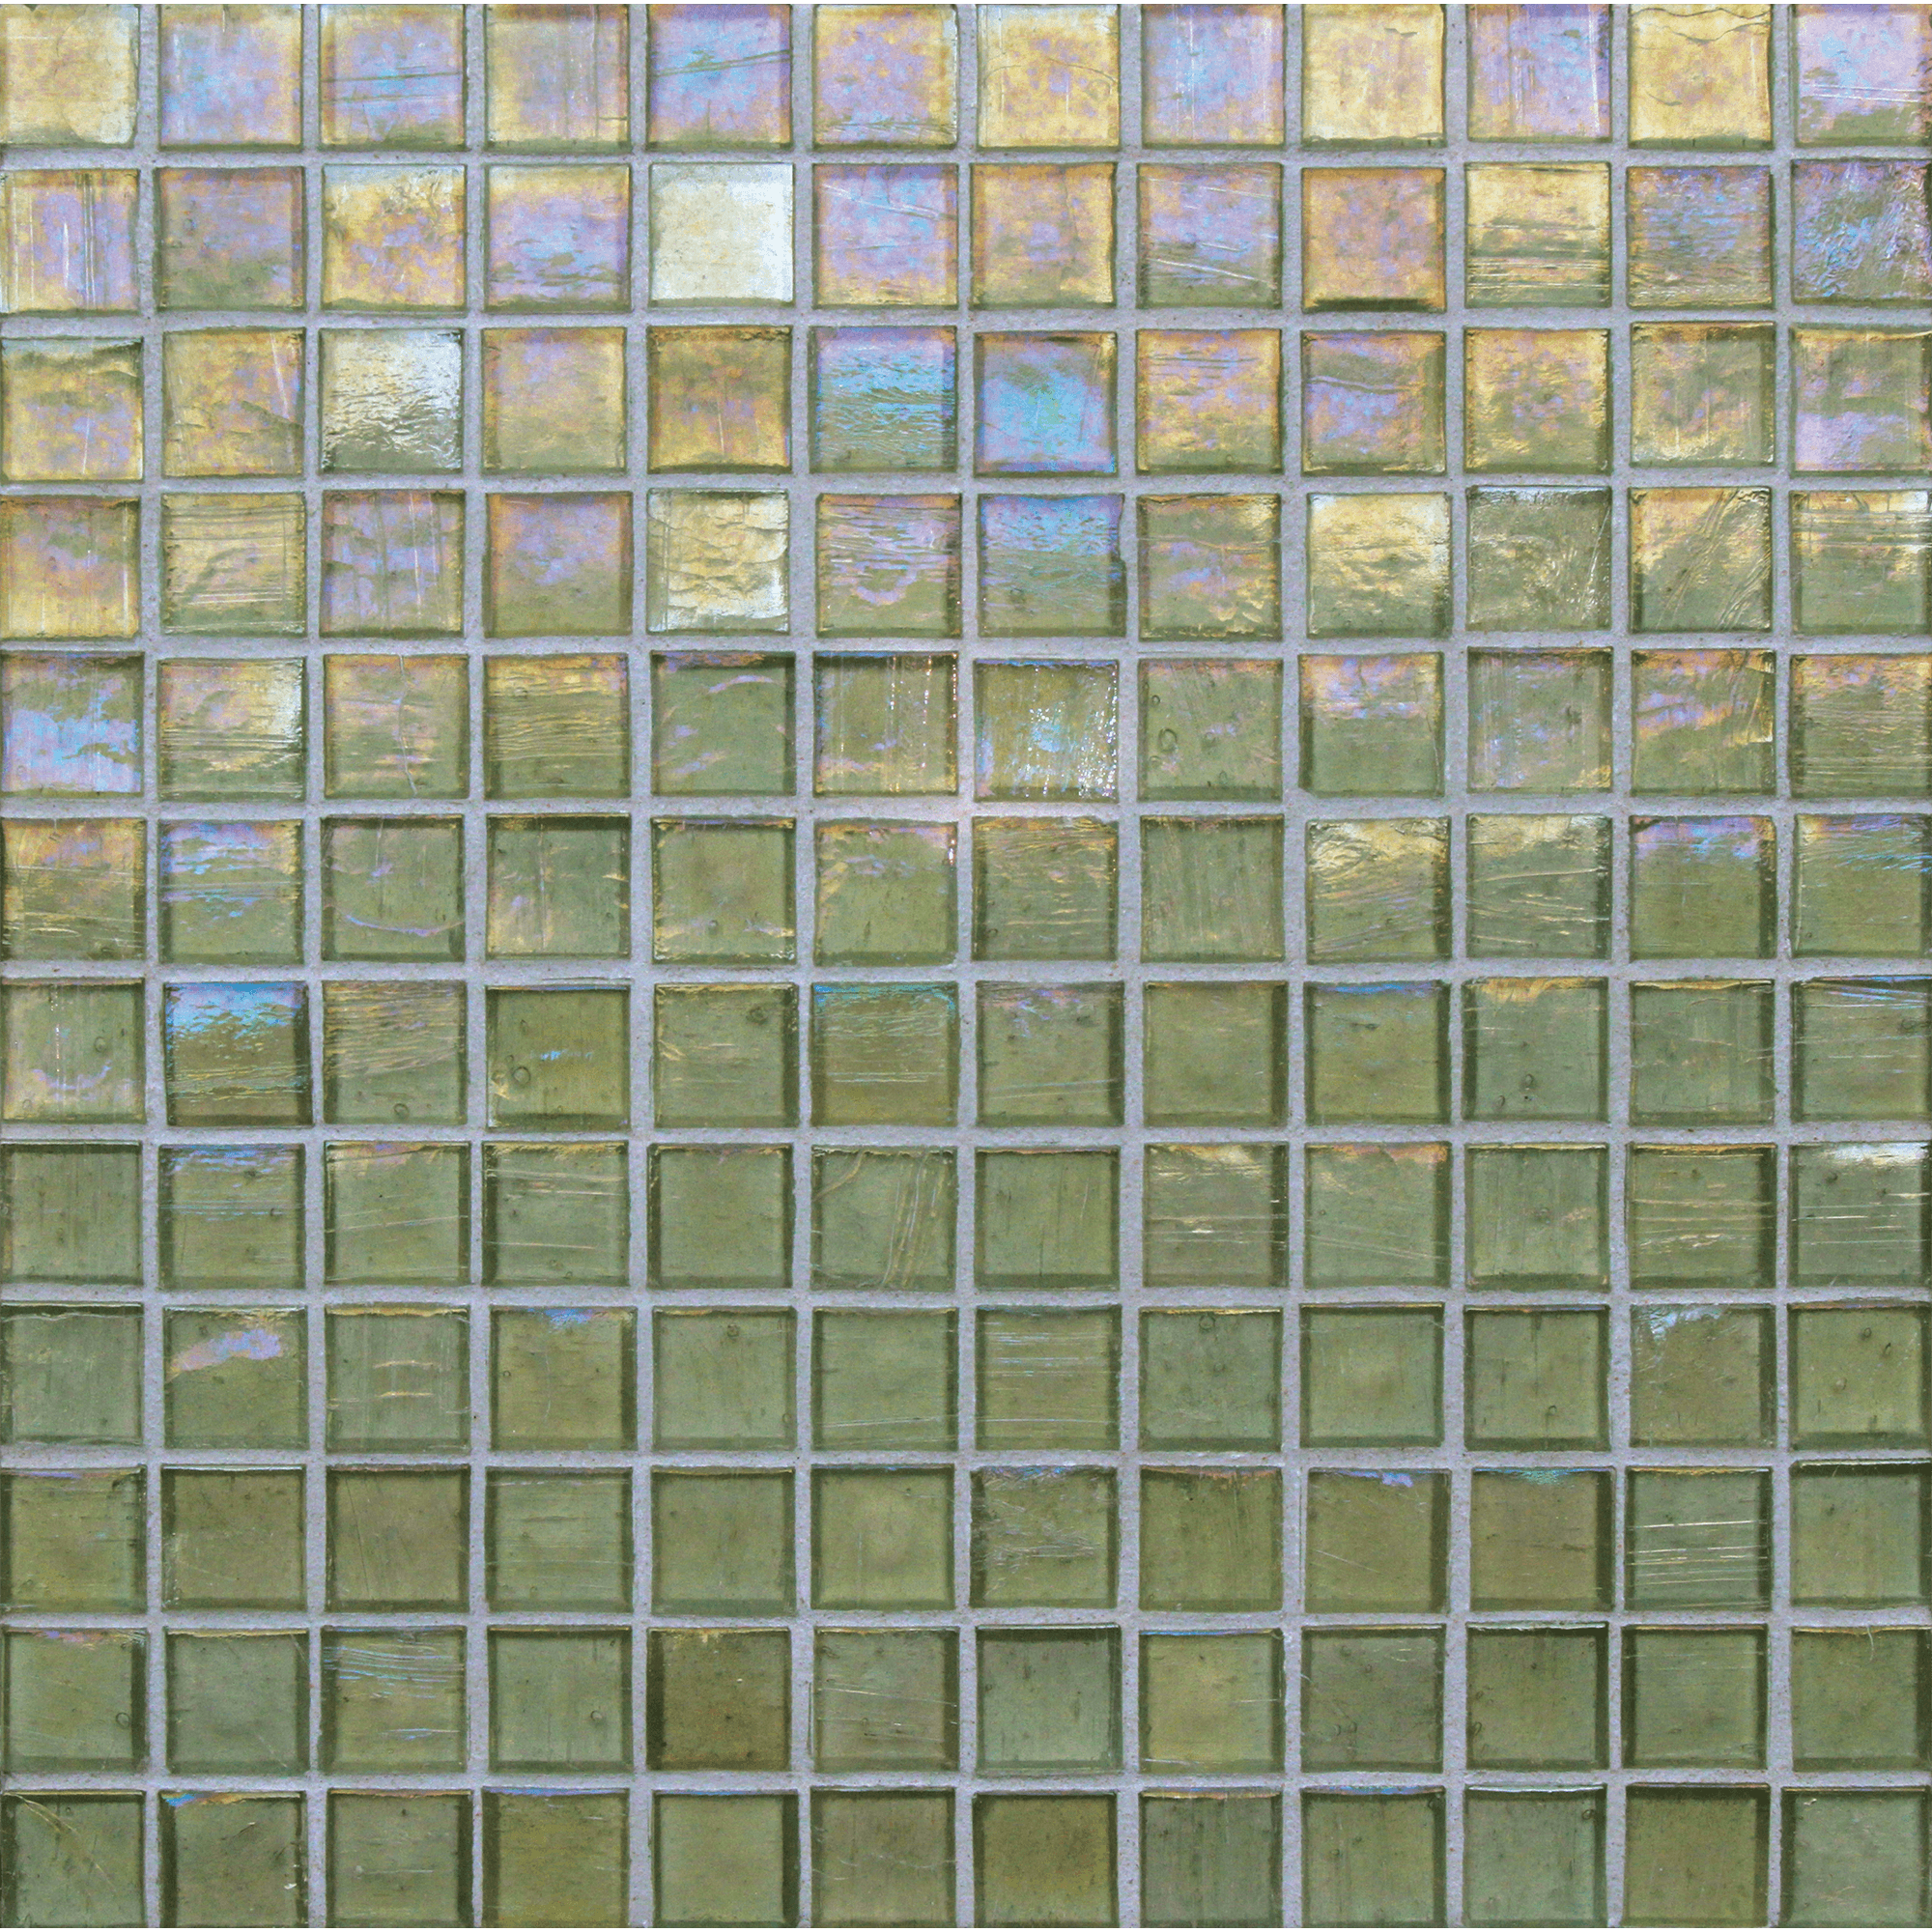 1x1 Mosaic in Conifer